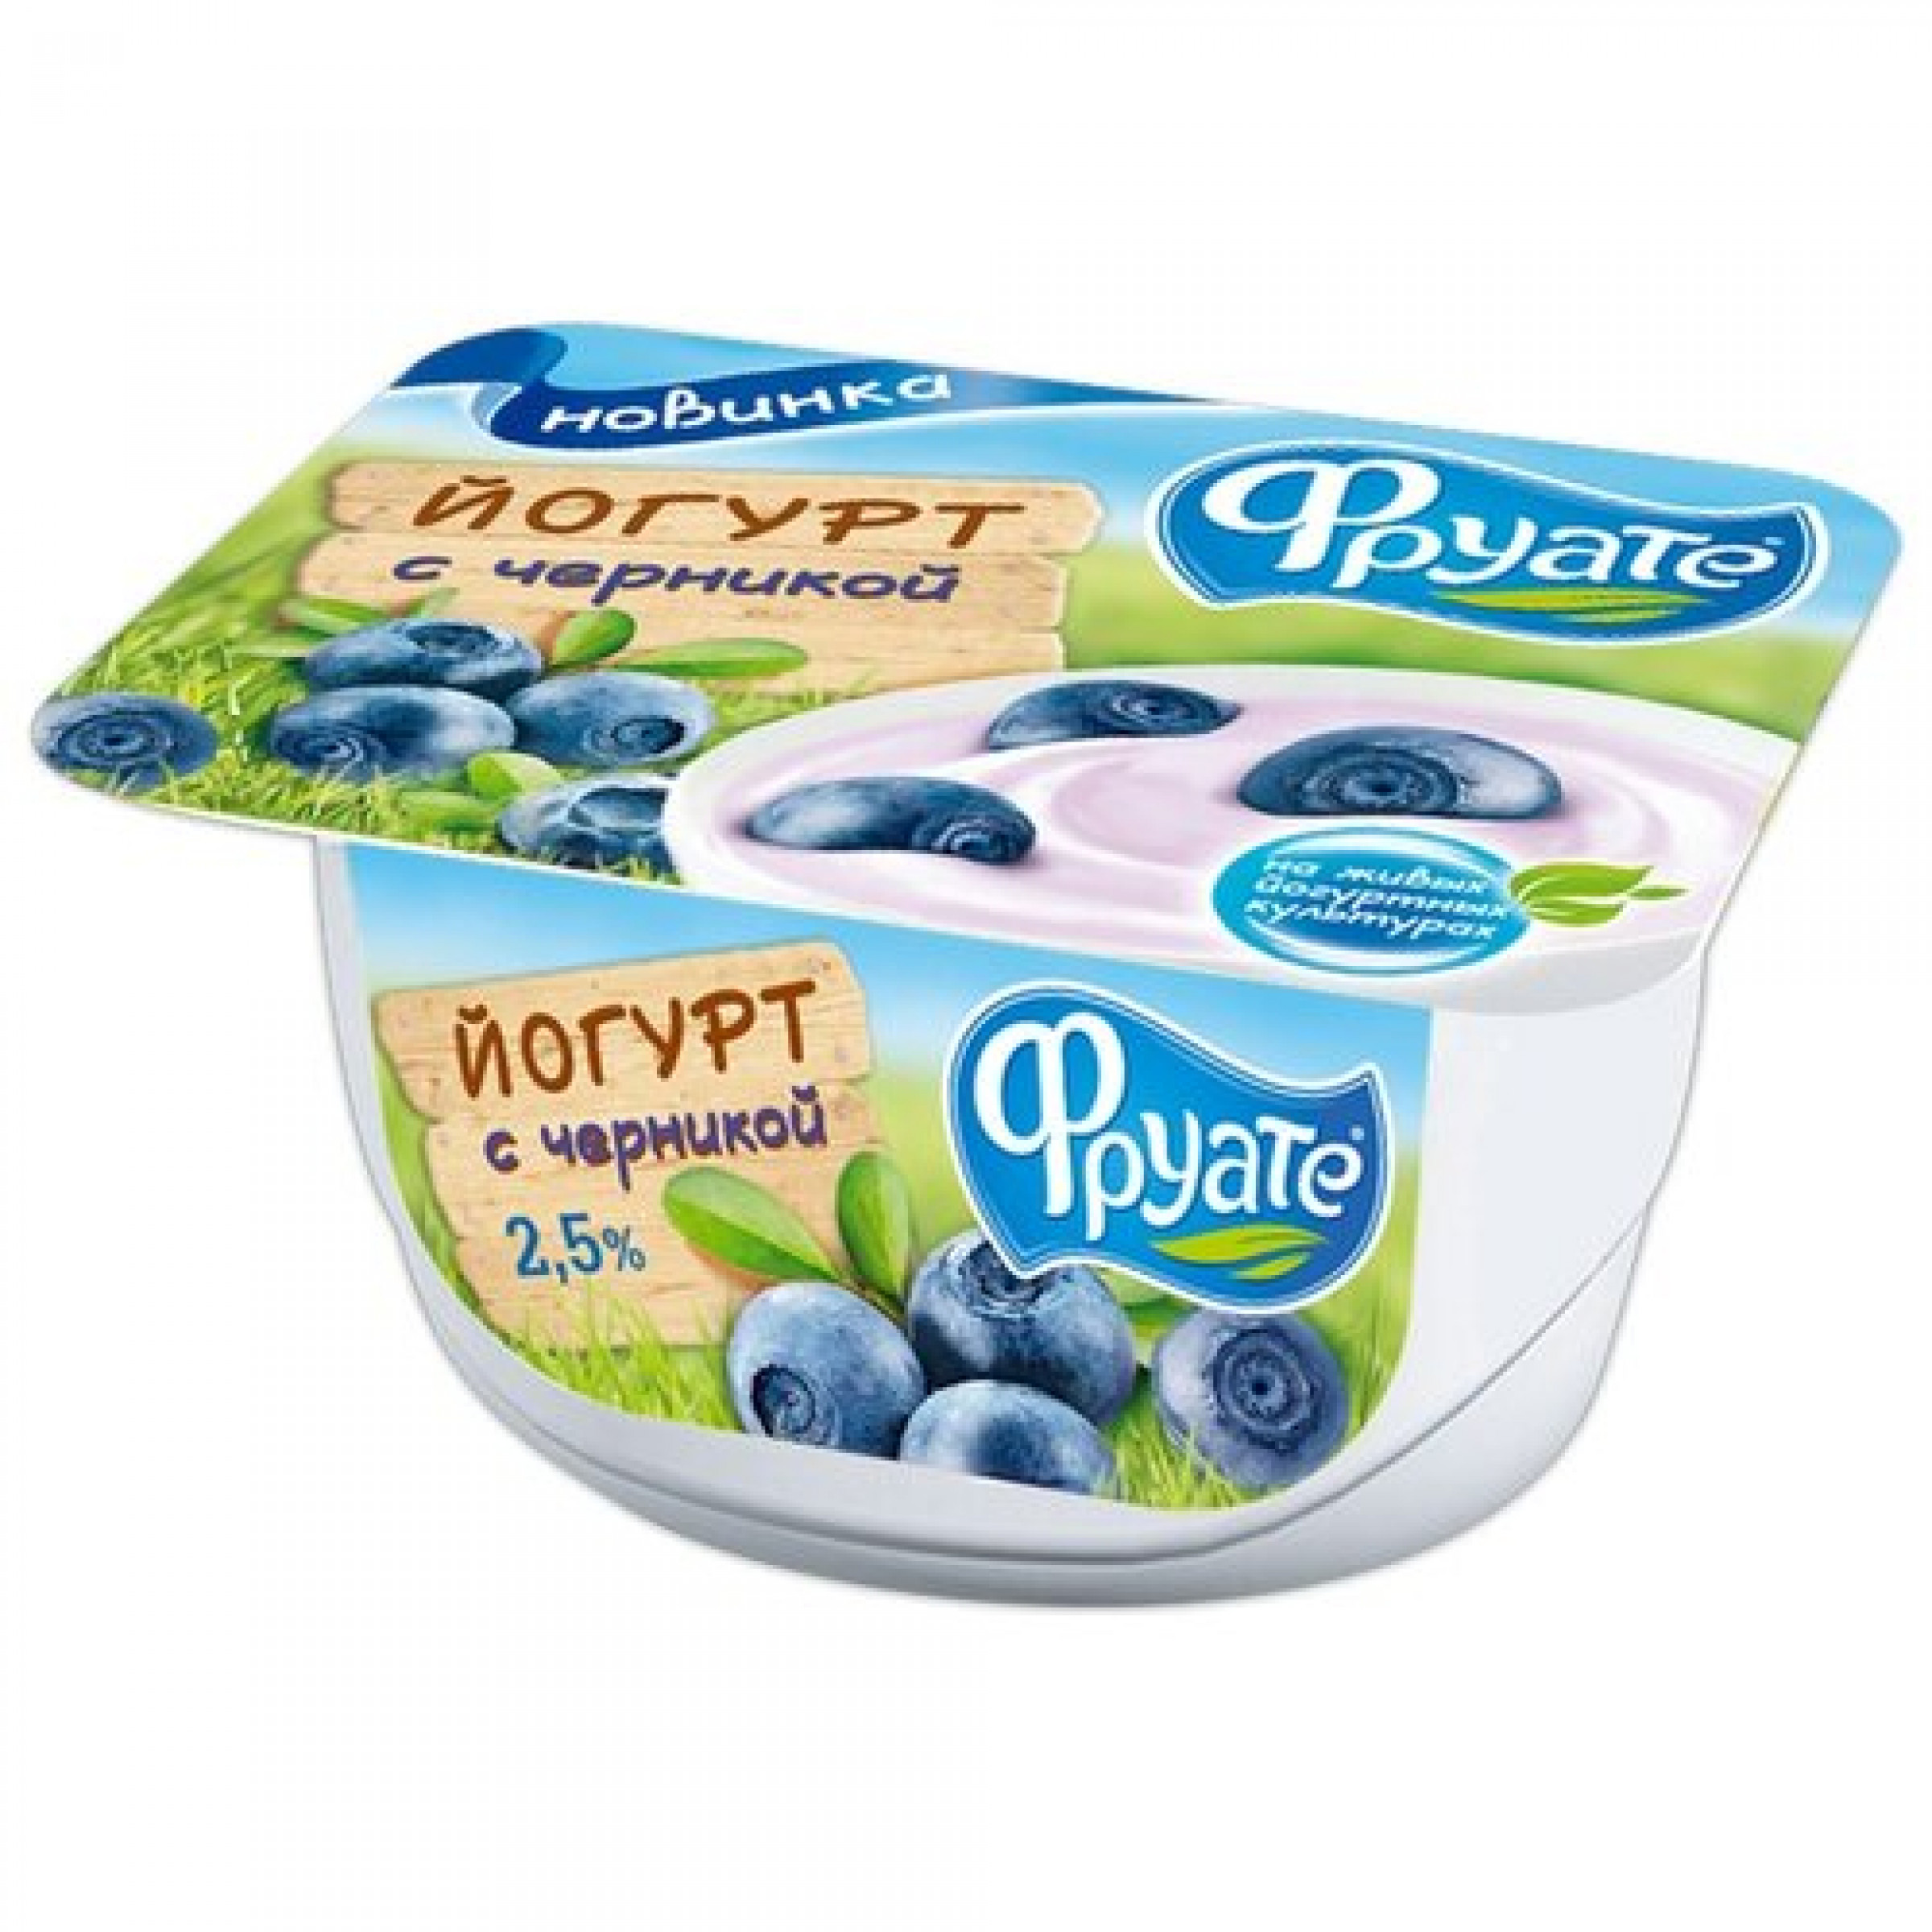 Густой йогурт Фруате с черникой 2,5%, 125 г